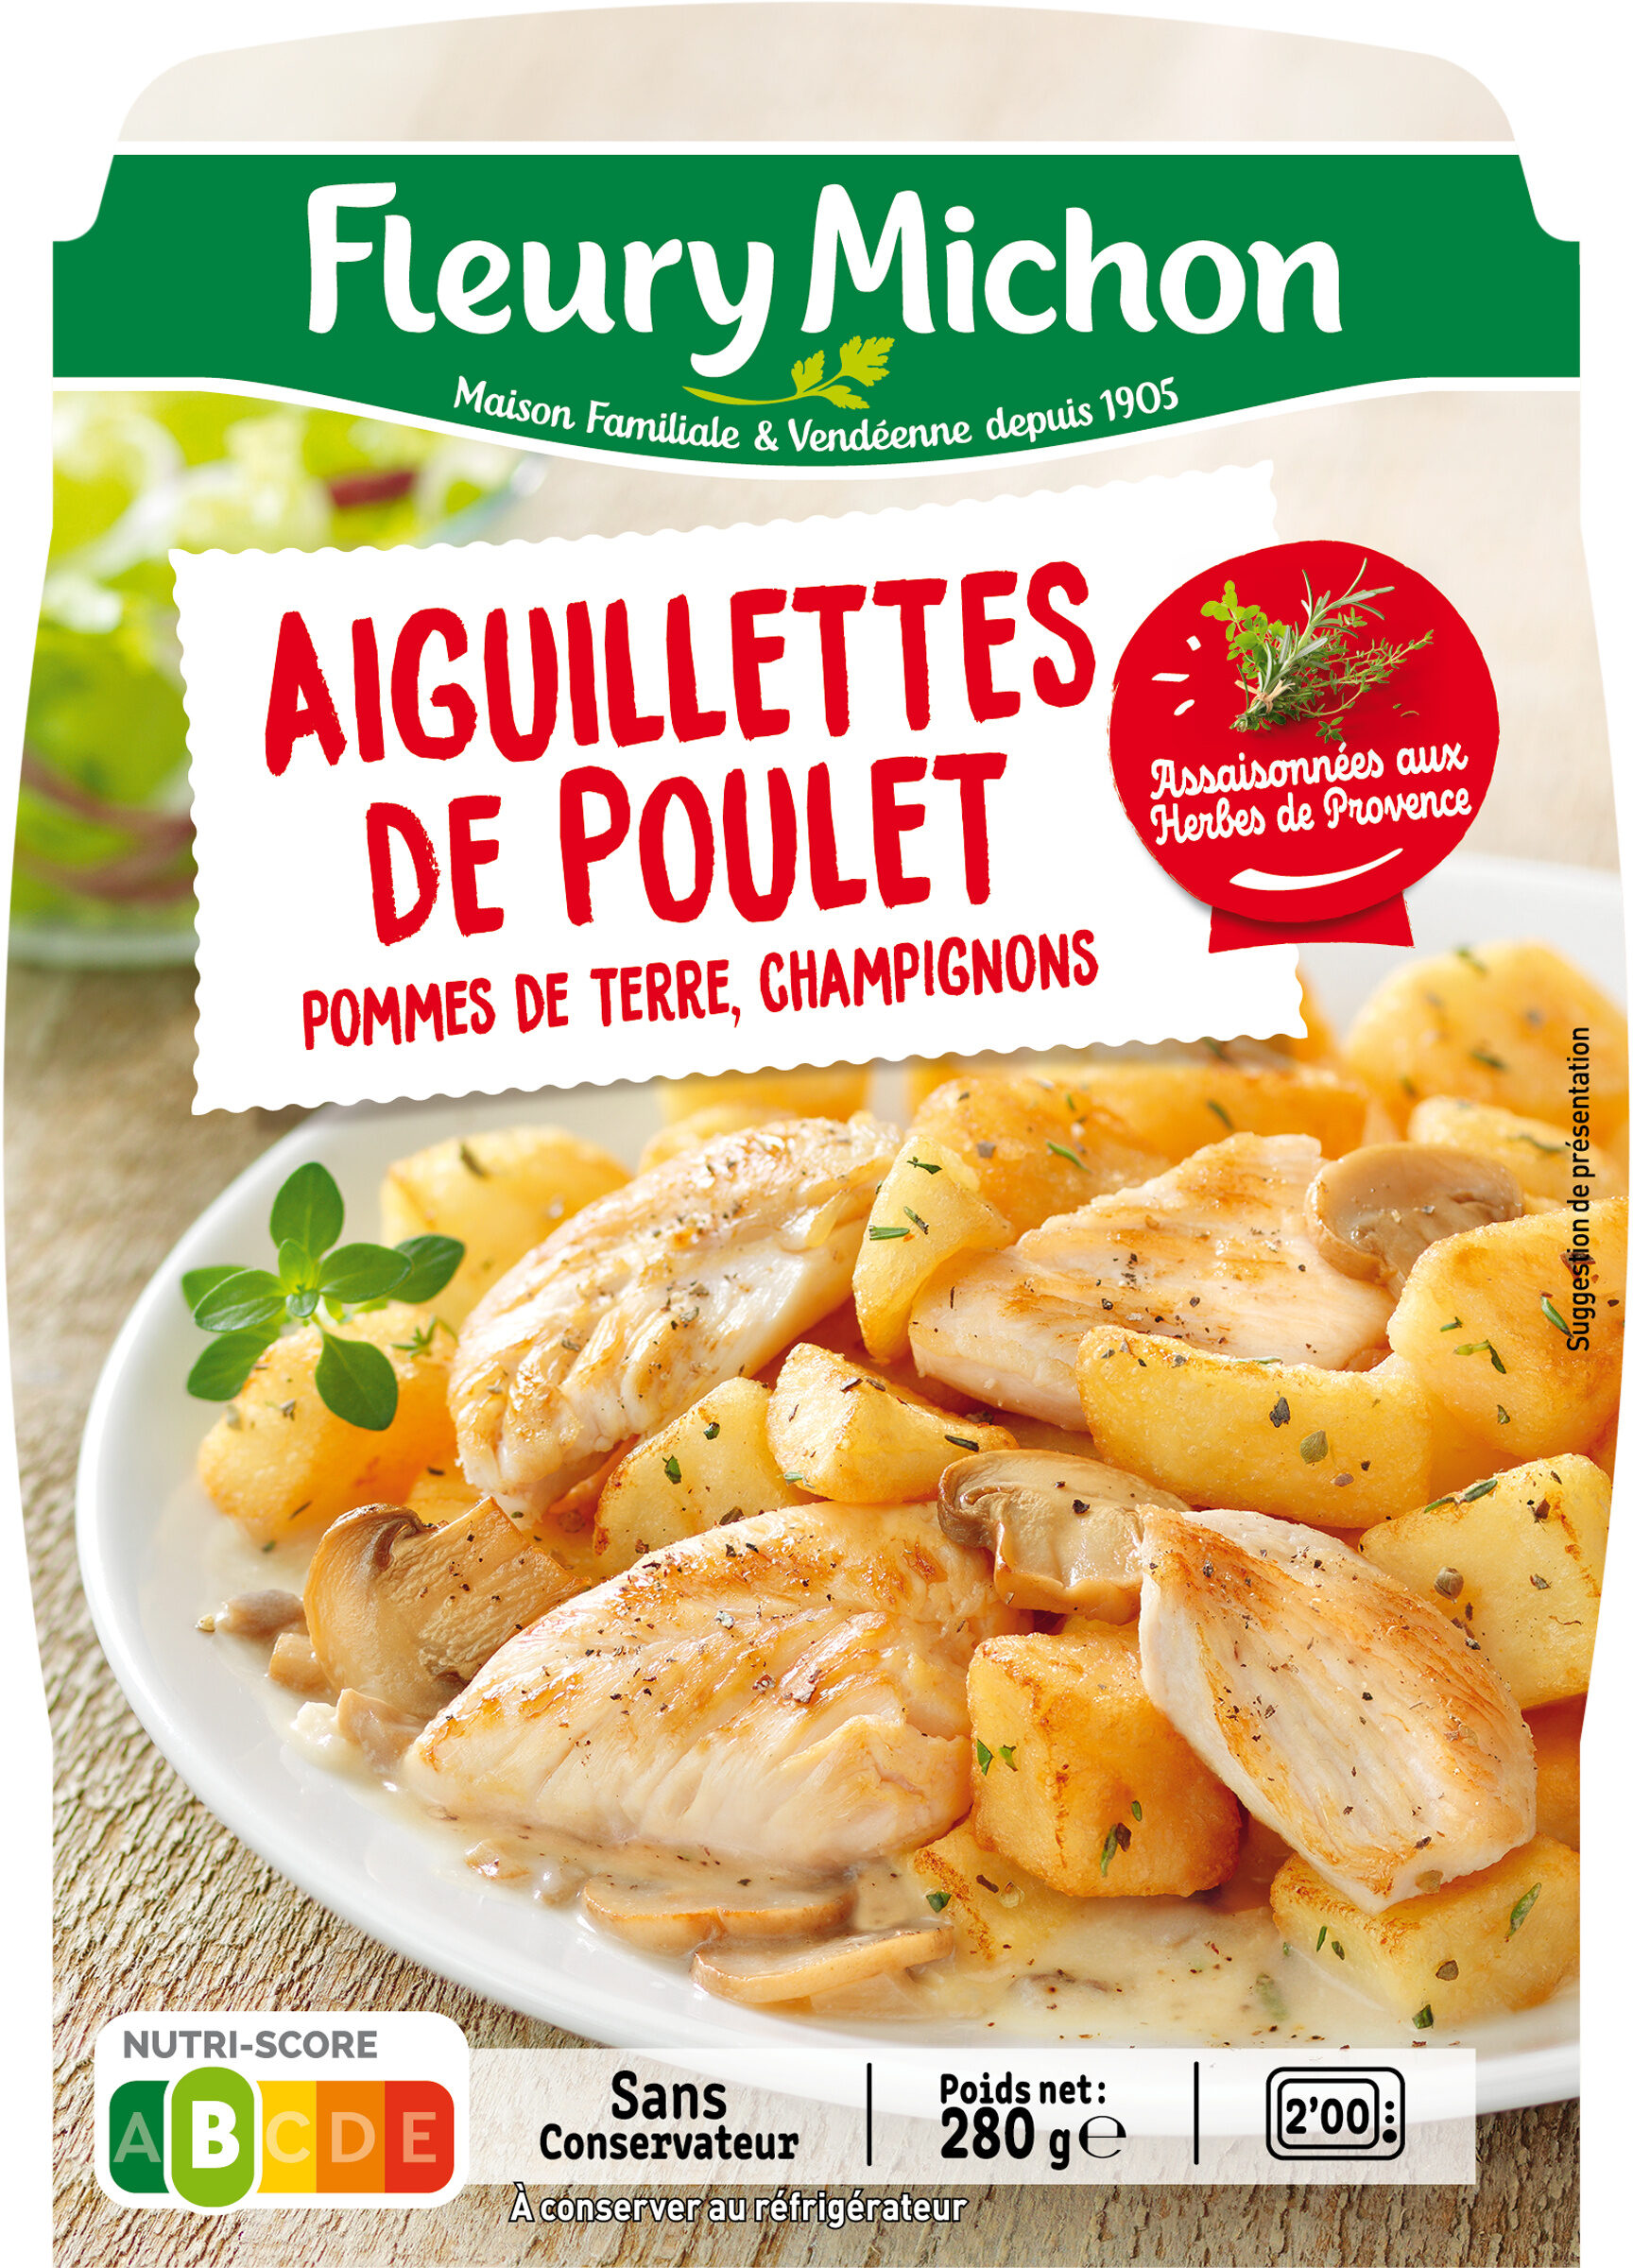 Les aiguillettes de poulet et ses pommes de terre champignons - Product - fr